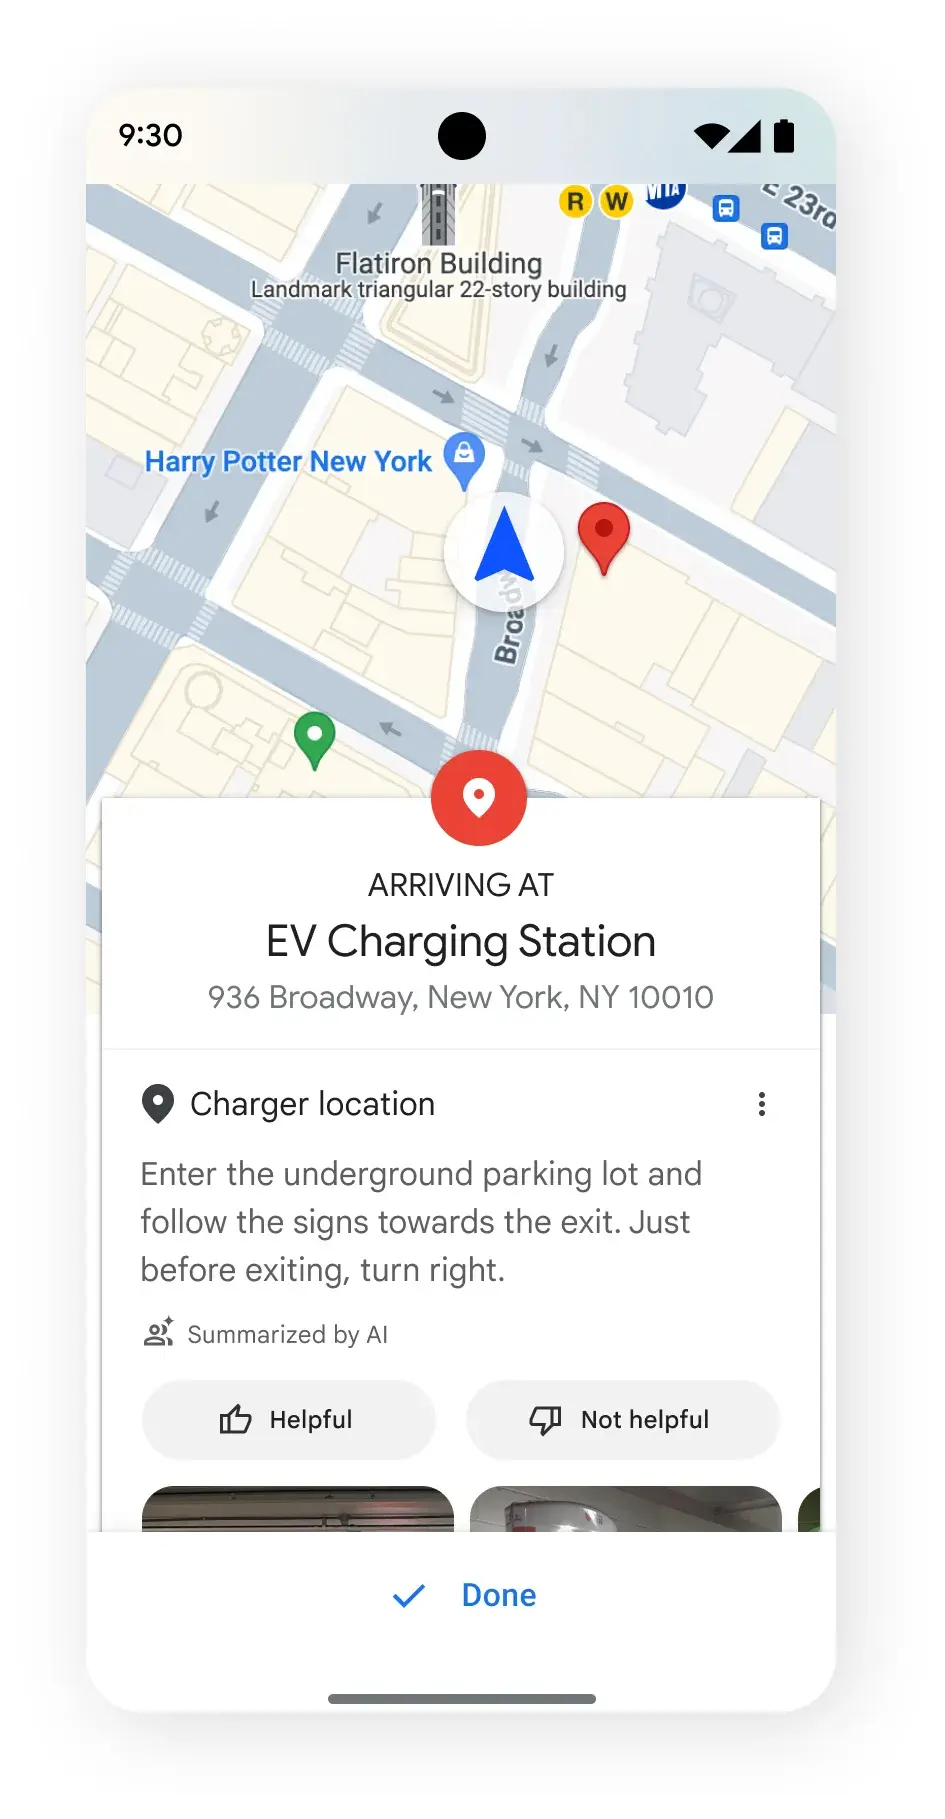 (Fonte da imagem - Google) Rotas geradas por IA para estações de carregamento de veículos elétricos - o Google Maps fornecerá instruções detalhadas para estações de carregamento de veículos elétricos e mais informações para os motoristas